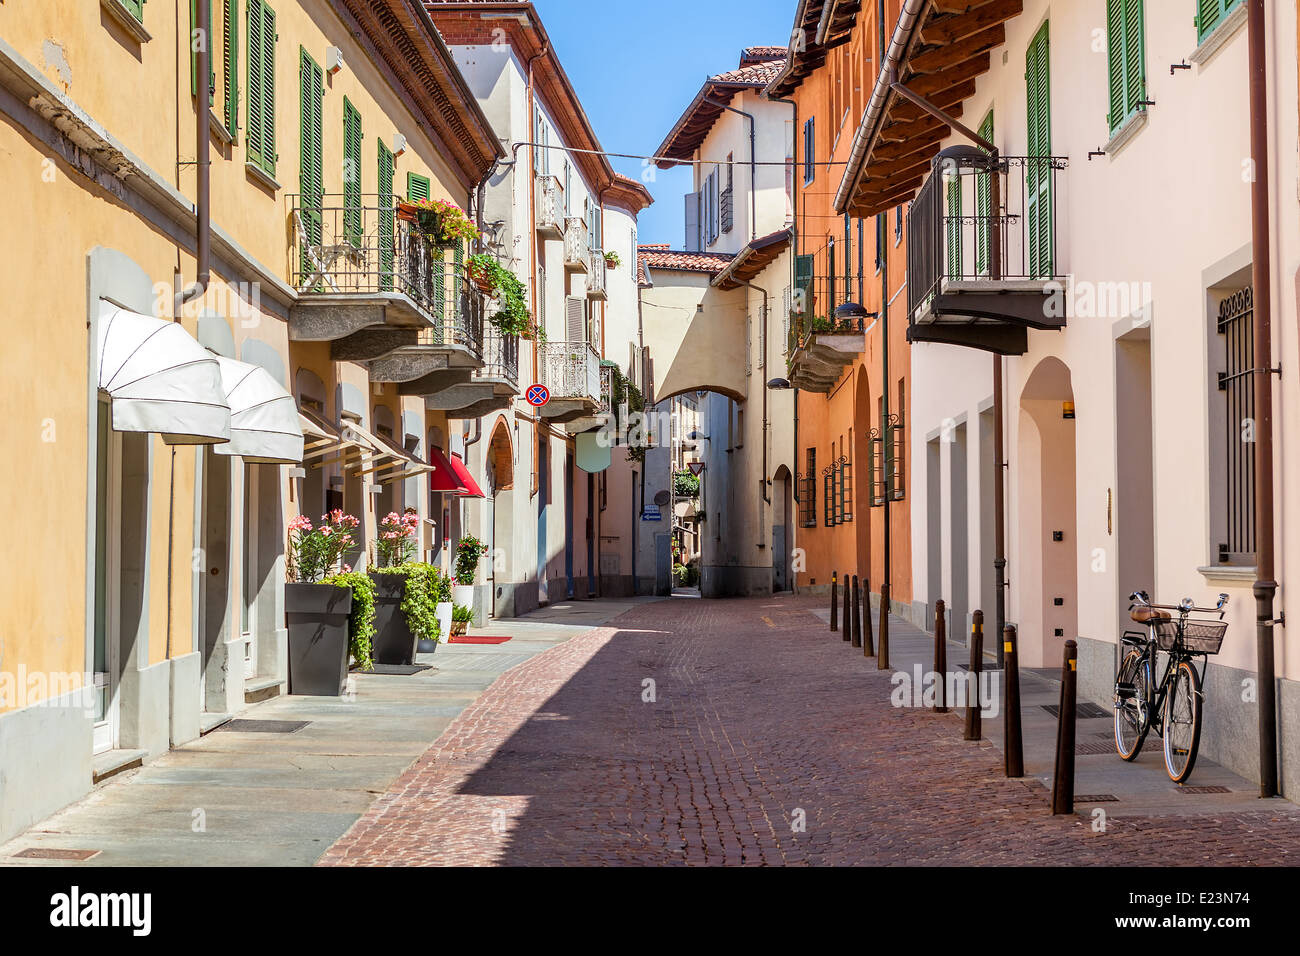 Blick auf leere schmale asphaltierte Straße zwischen bunten Häusern und Fahrrad lehnt an der Wand in Stadt von Alba, Italien. Stockfoto